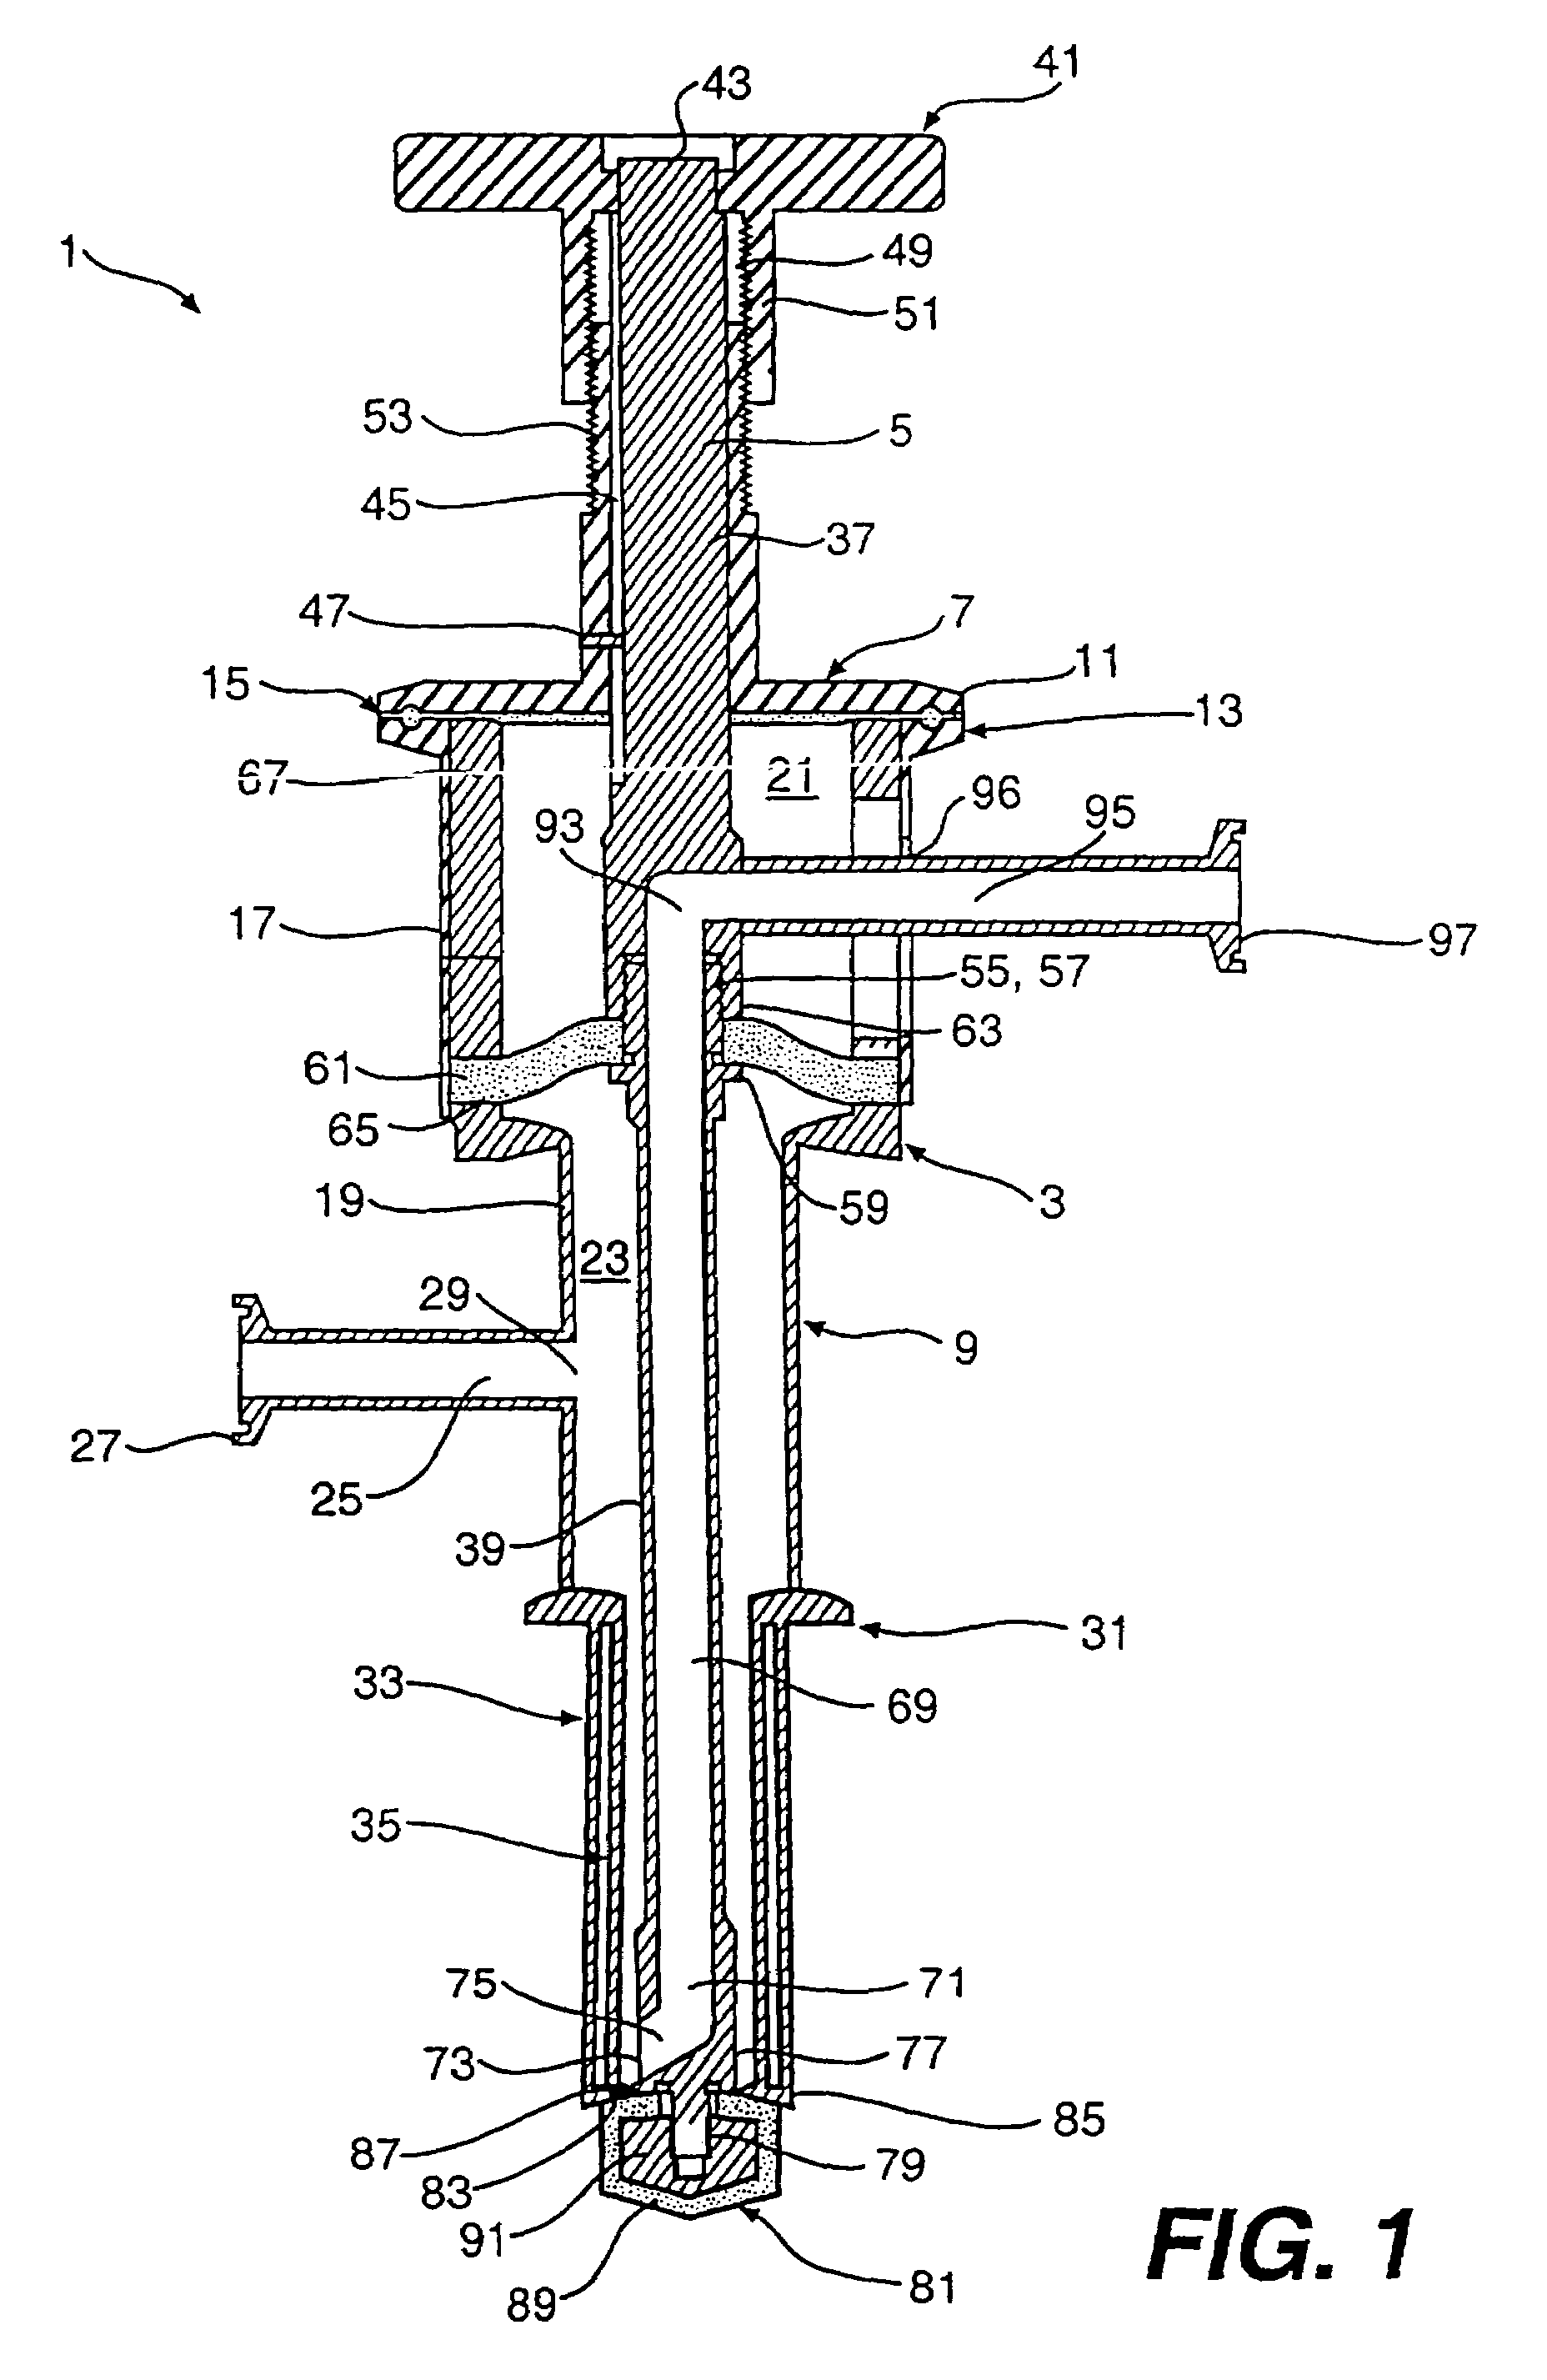 Dip tube valve assembly